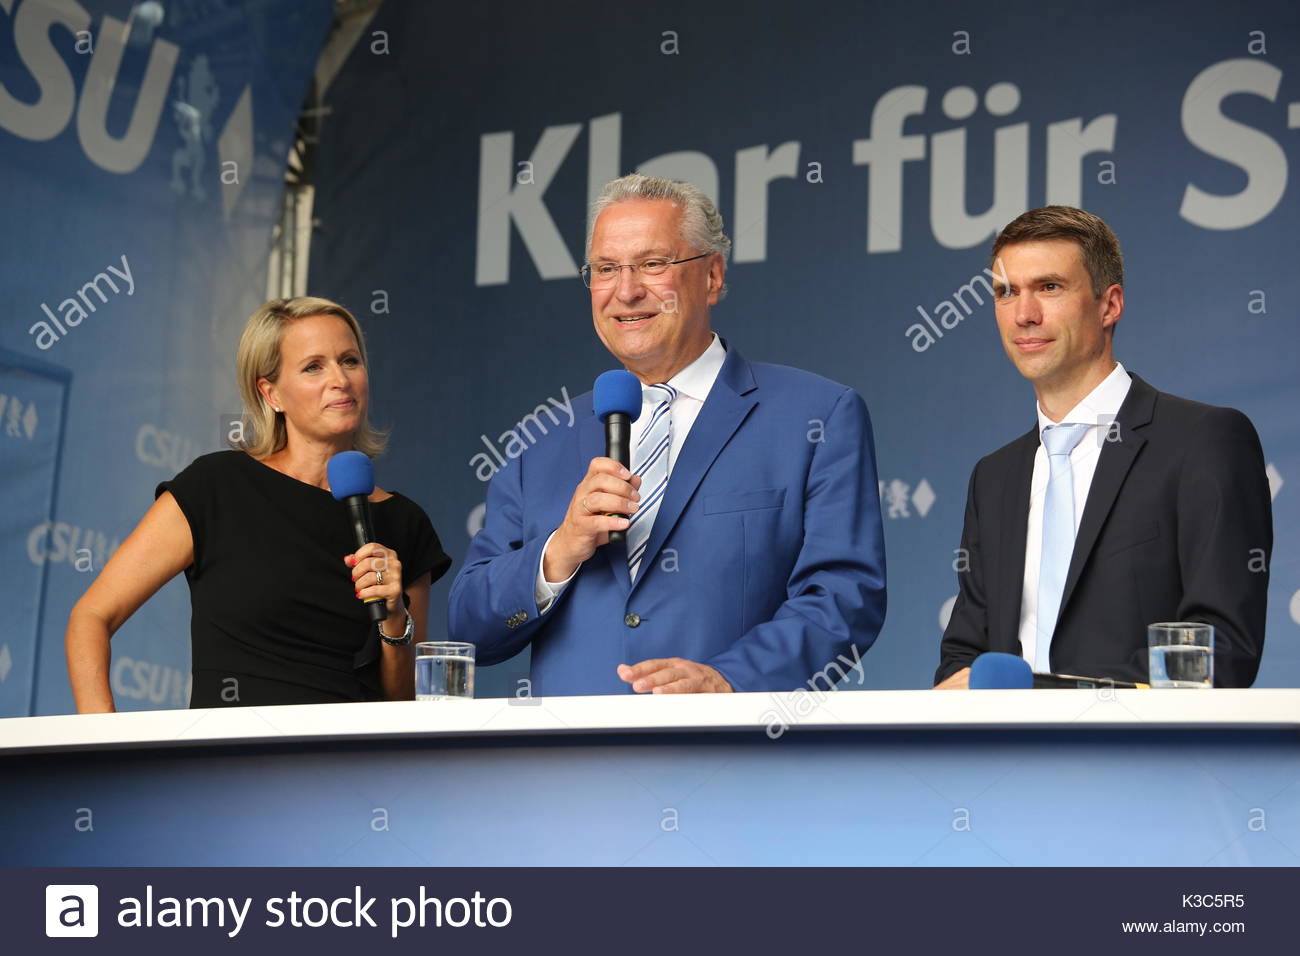 Joachim Hermann participa en un evento de la CSU en Erlangen Alemania durante el año 2017 las elecciones generales alemanas. Junto a él se encuentra Stefan Müller, CSU candiate. Foto de stock